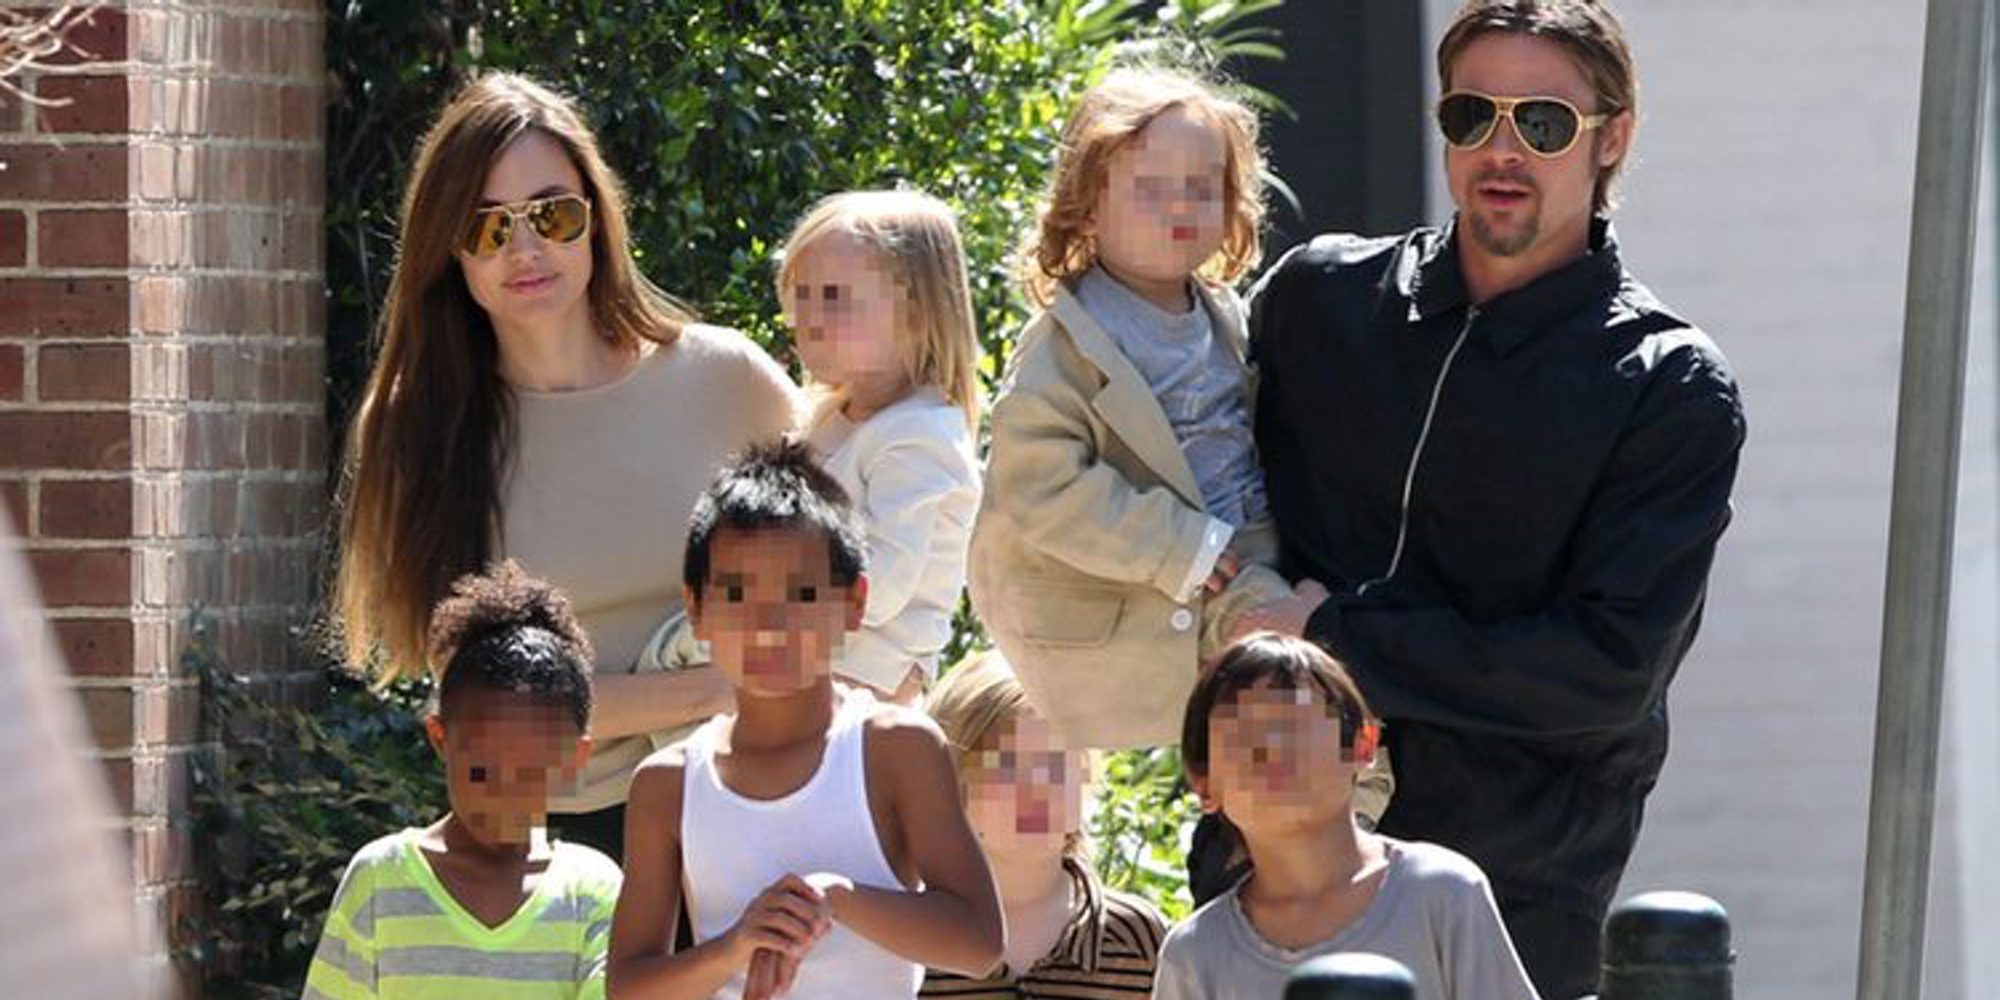 Acuerdo de custodia: Angelina Jolie vivirá con sus 6 hijos y Brad Pitt tendrá visitas terapéuticas